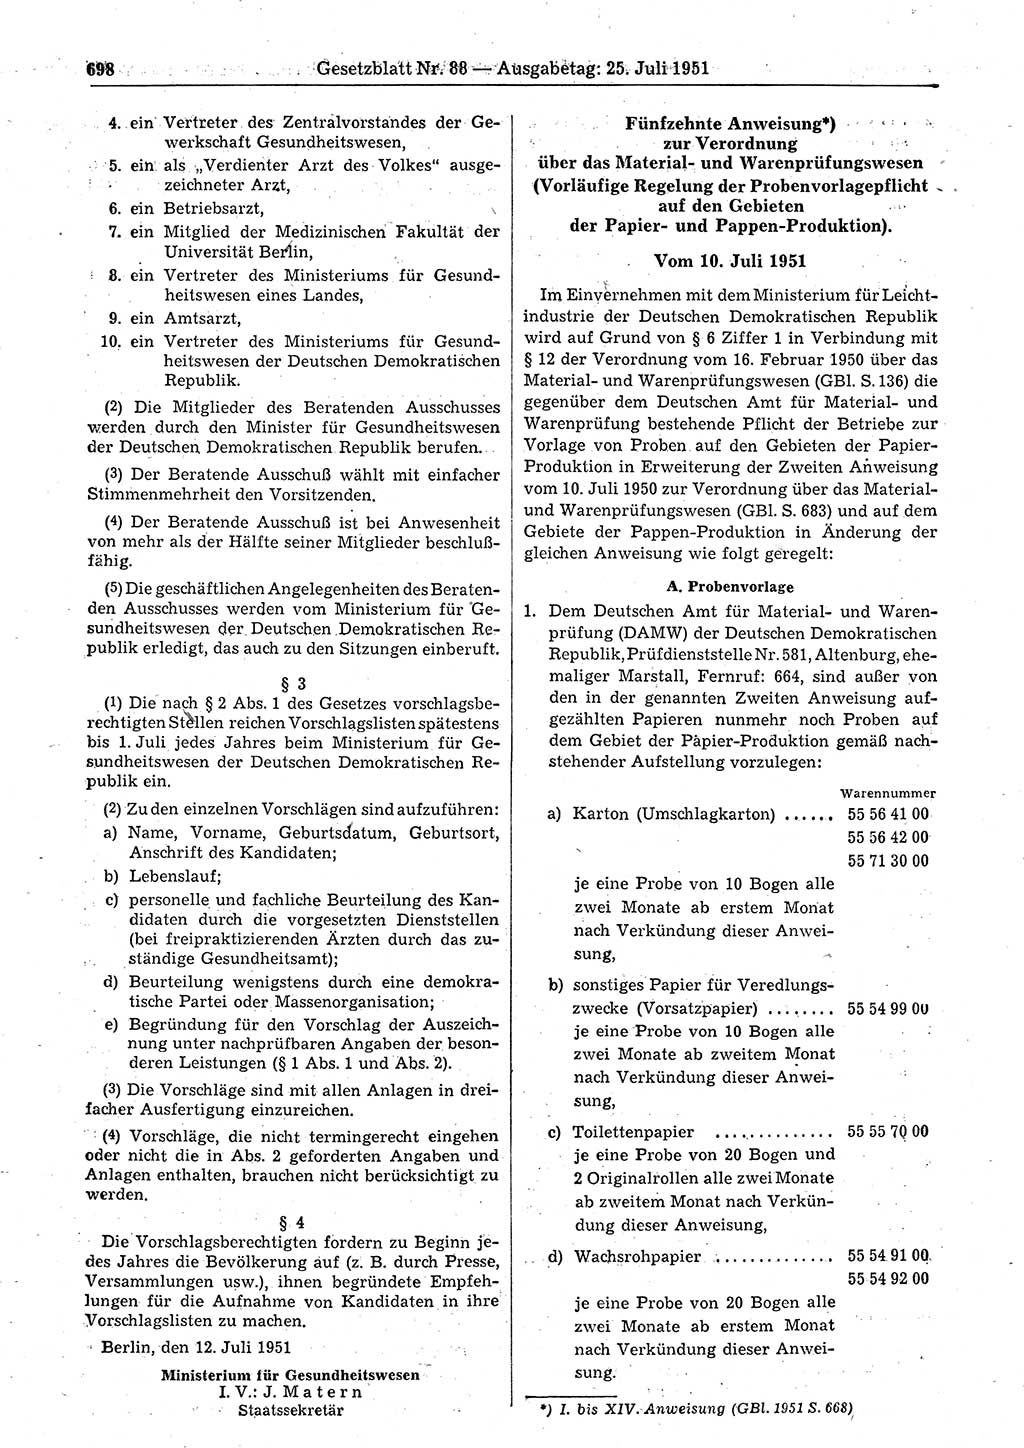 Gesetzblatt (GBl.) der Deutschen Demokratischen Republik (DDR) 1951, Seite 698 (GBl. DDR 1951, S. 698)